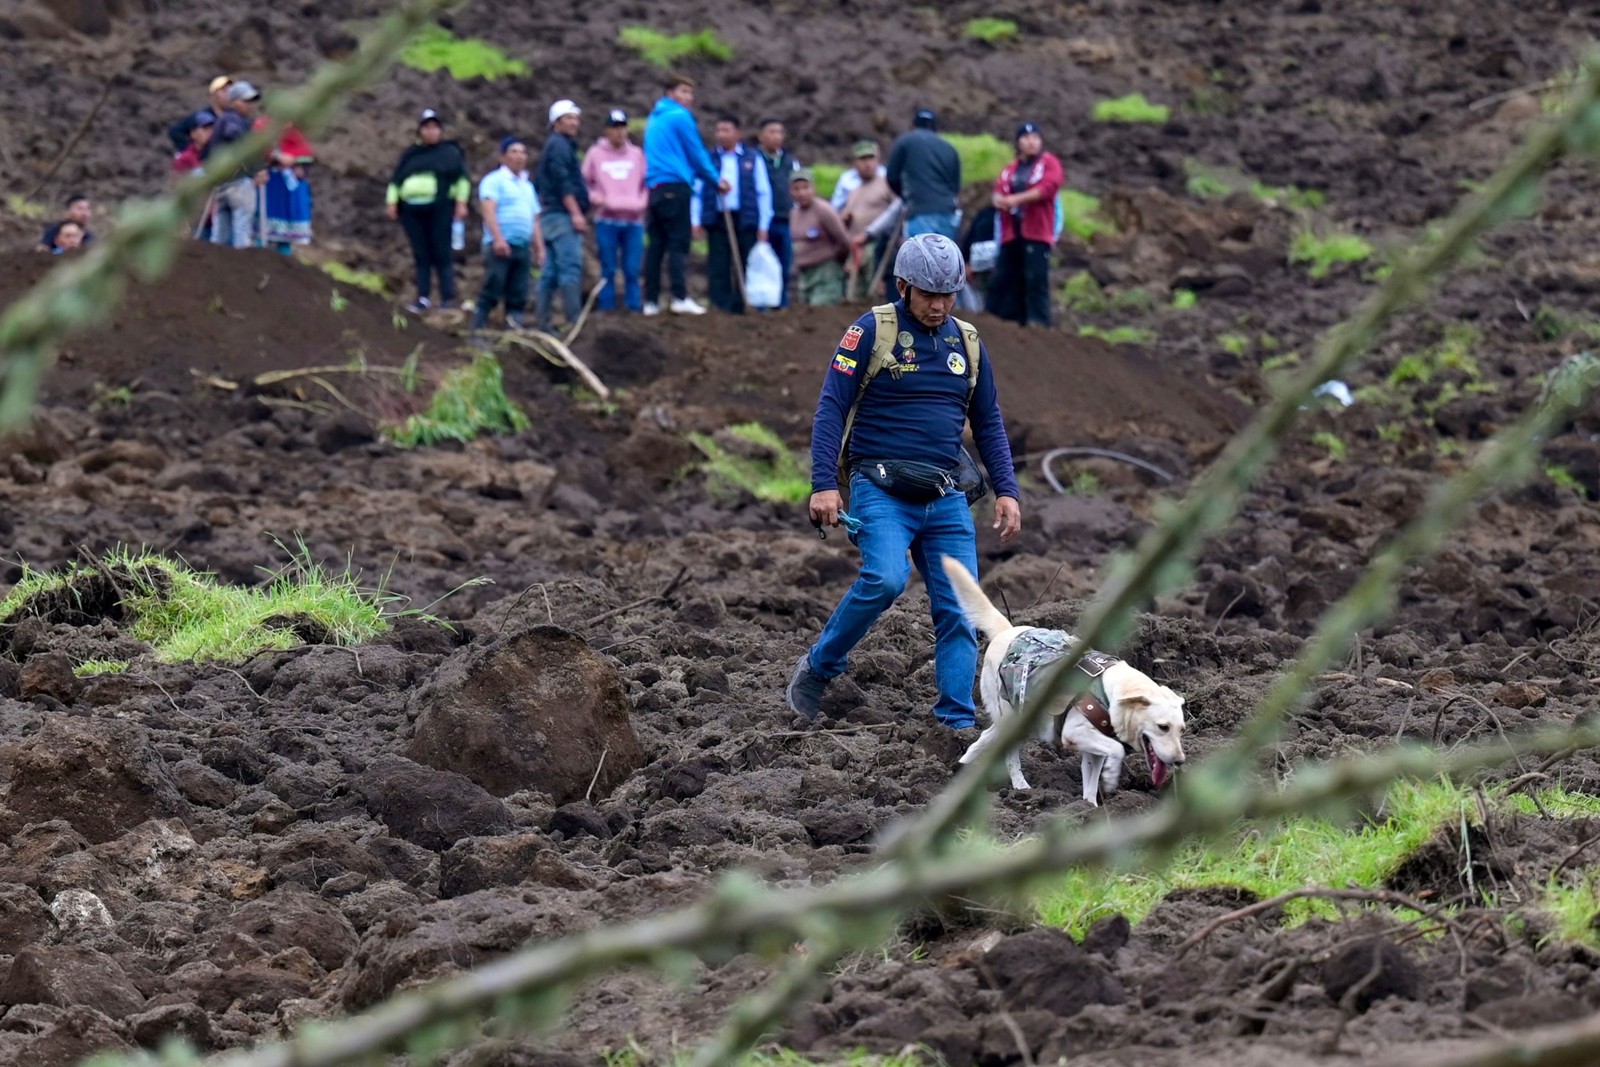 Equipes de resgate usam cães farejadores na busca por vítimas de avalanche no Equador — Foto: Marcos PIN / AFP